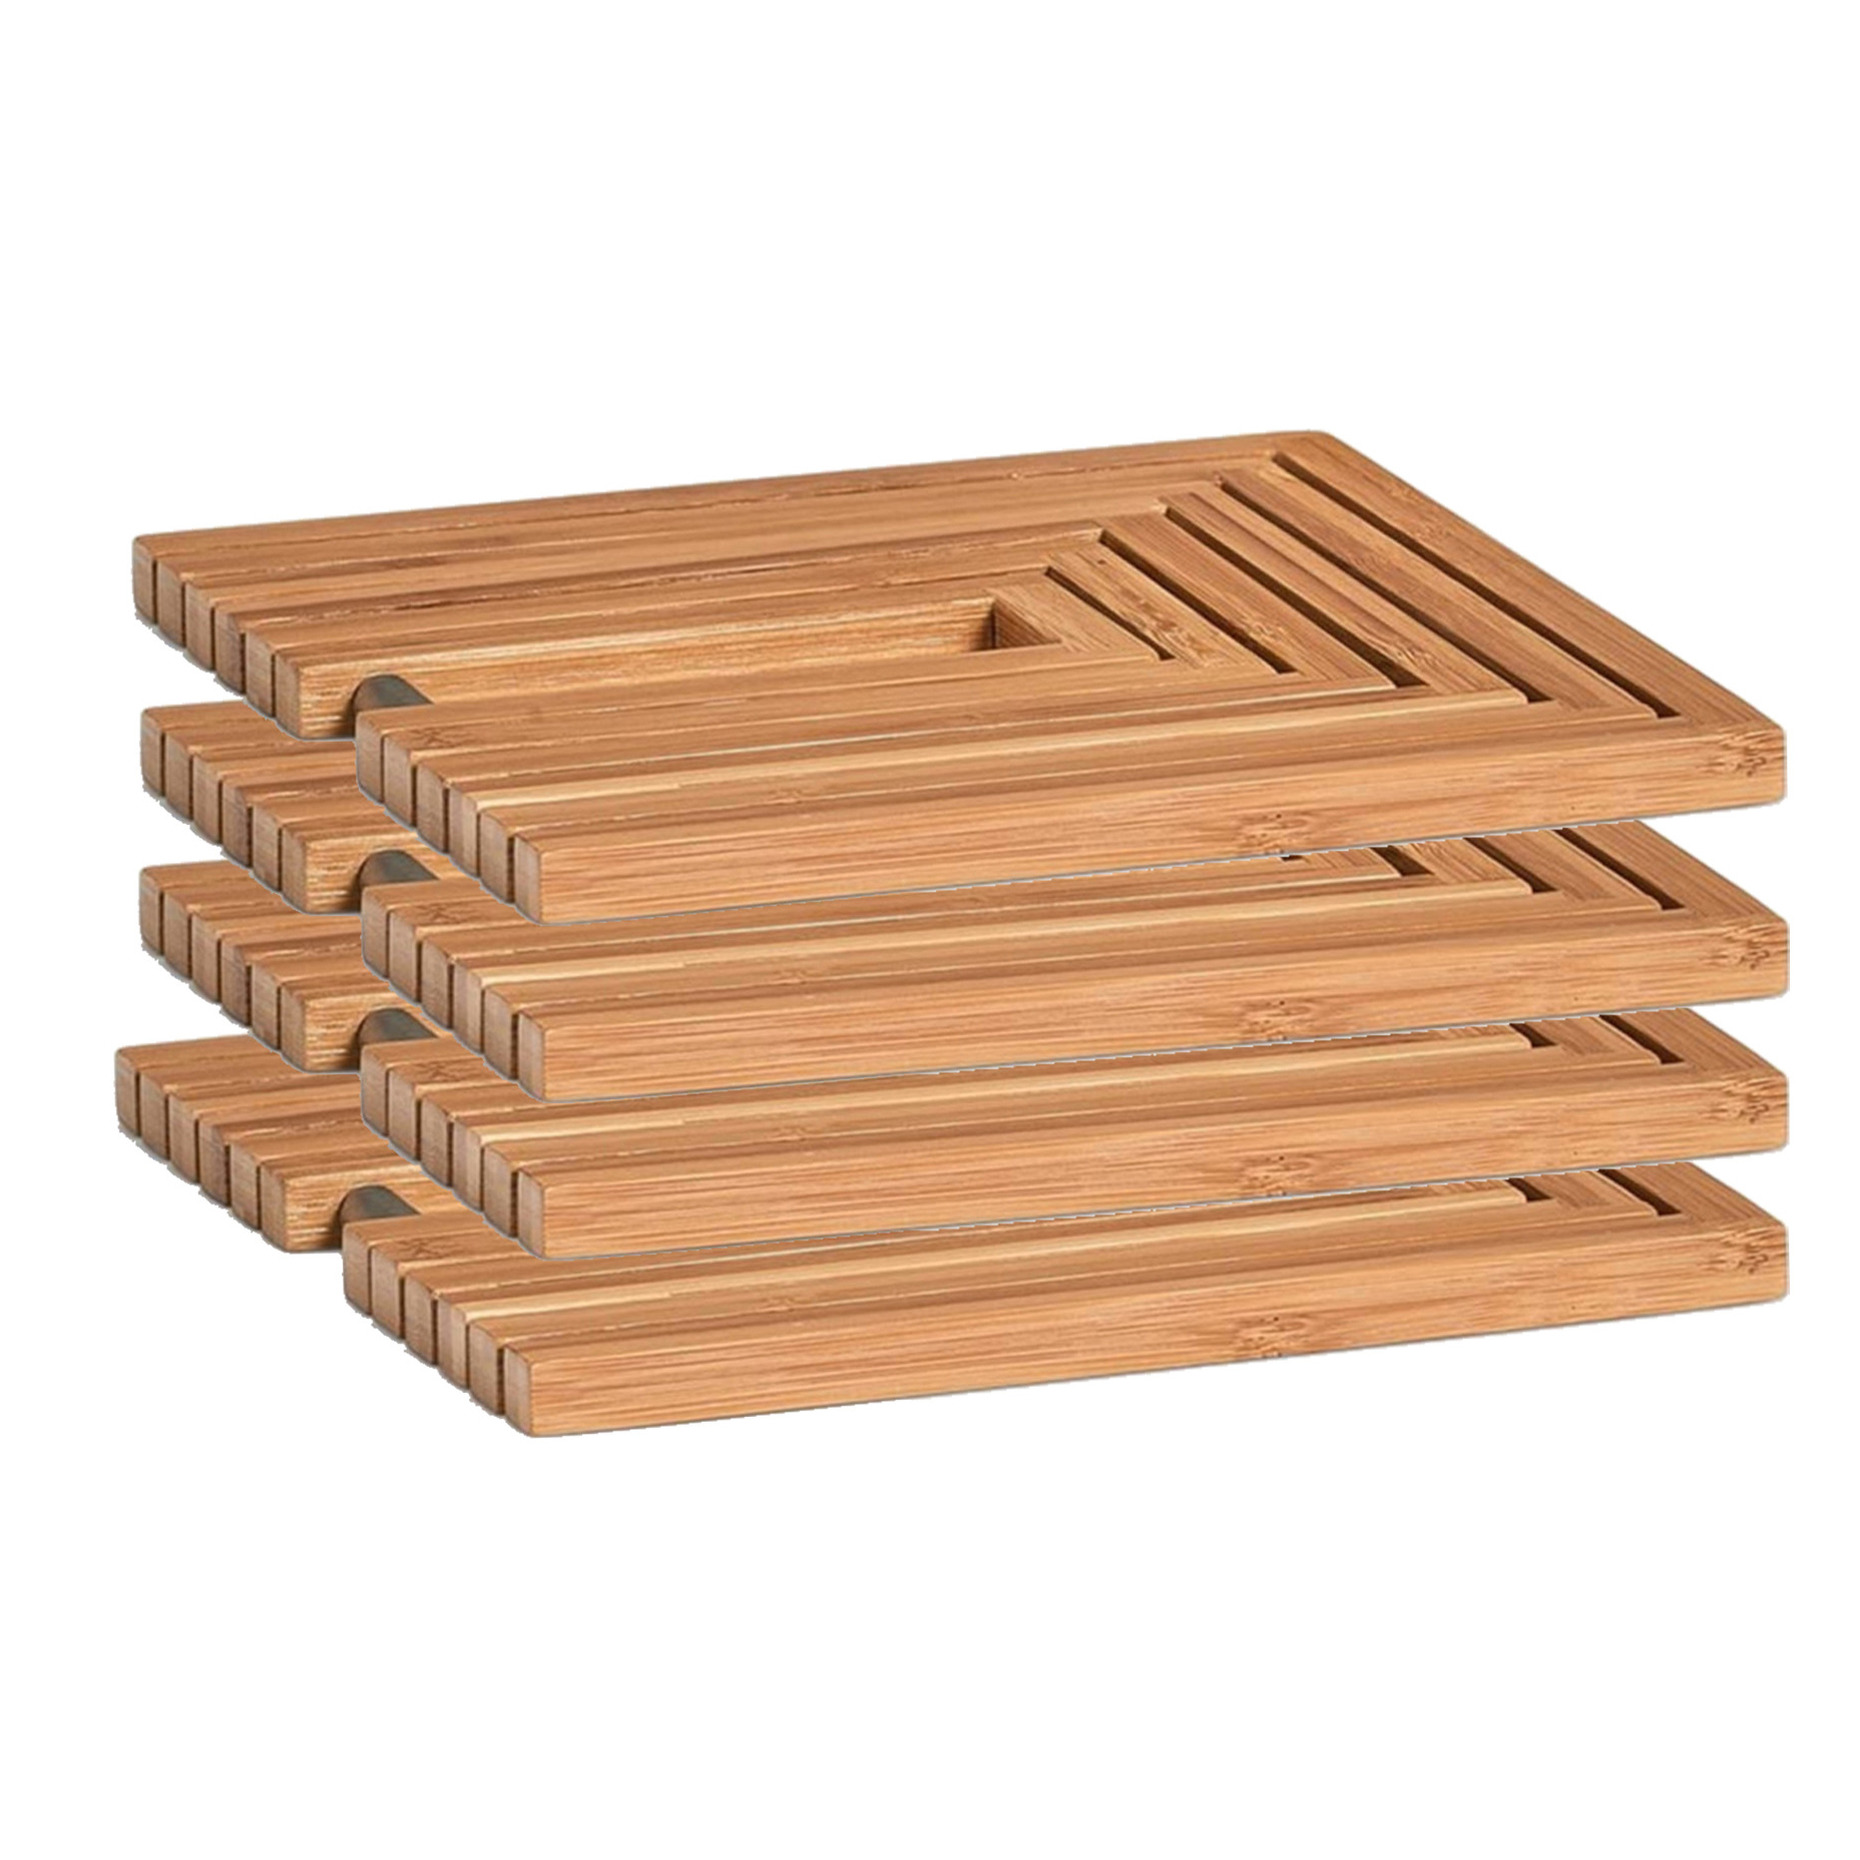 4x Bamboe houten pannenonderzetters uitklapbaar 19-34 x 19 cm